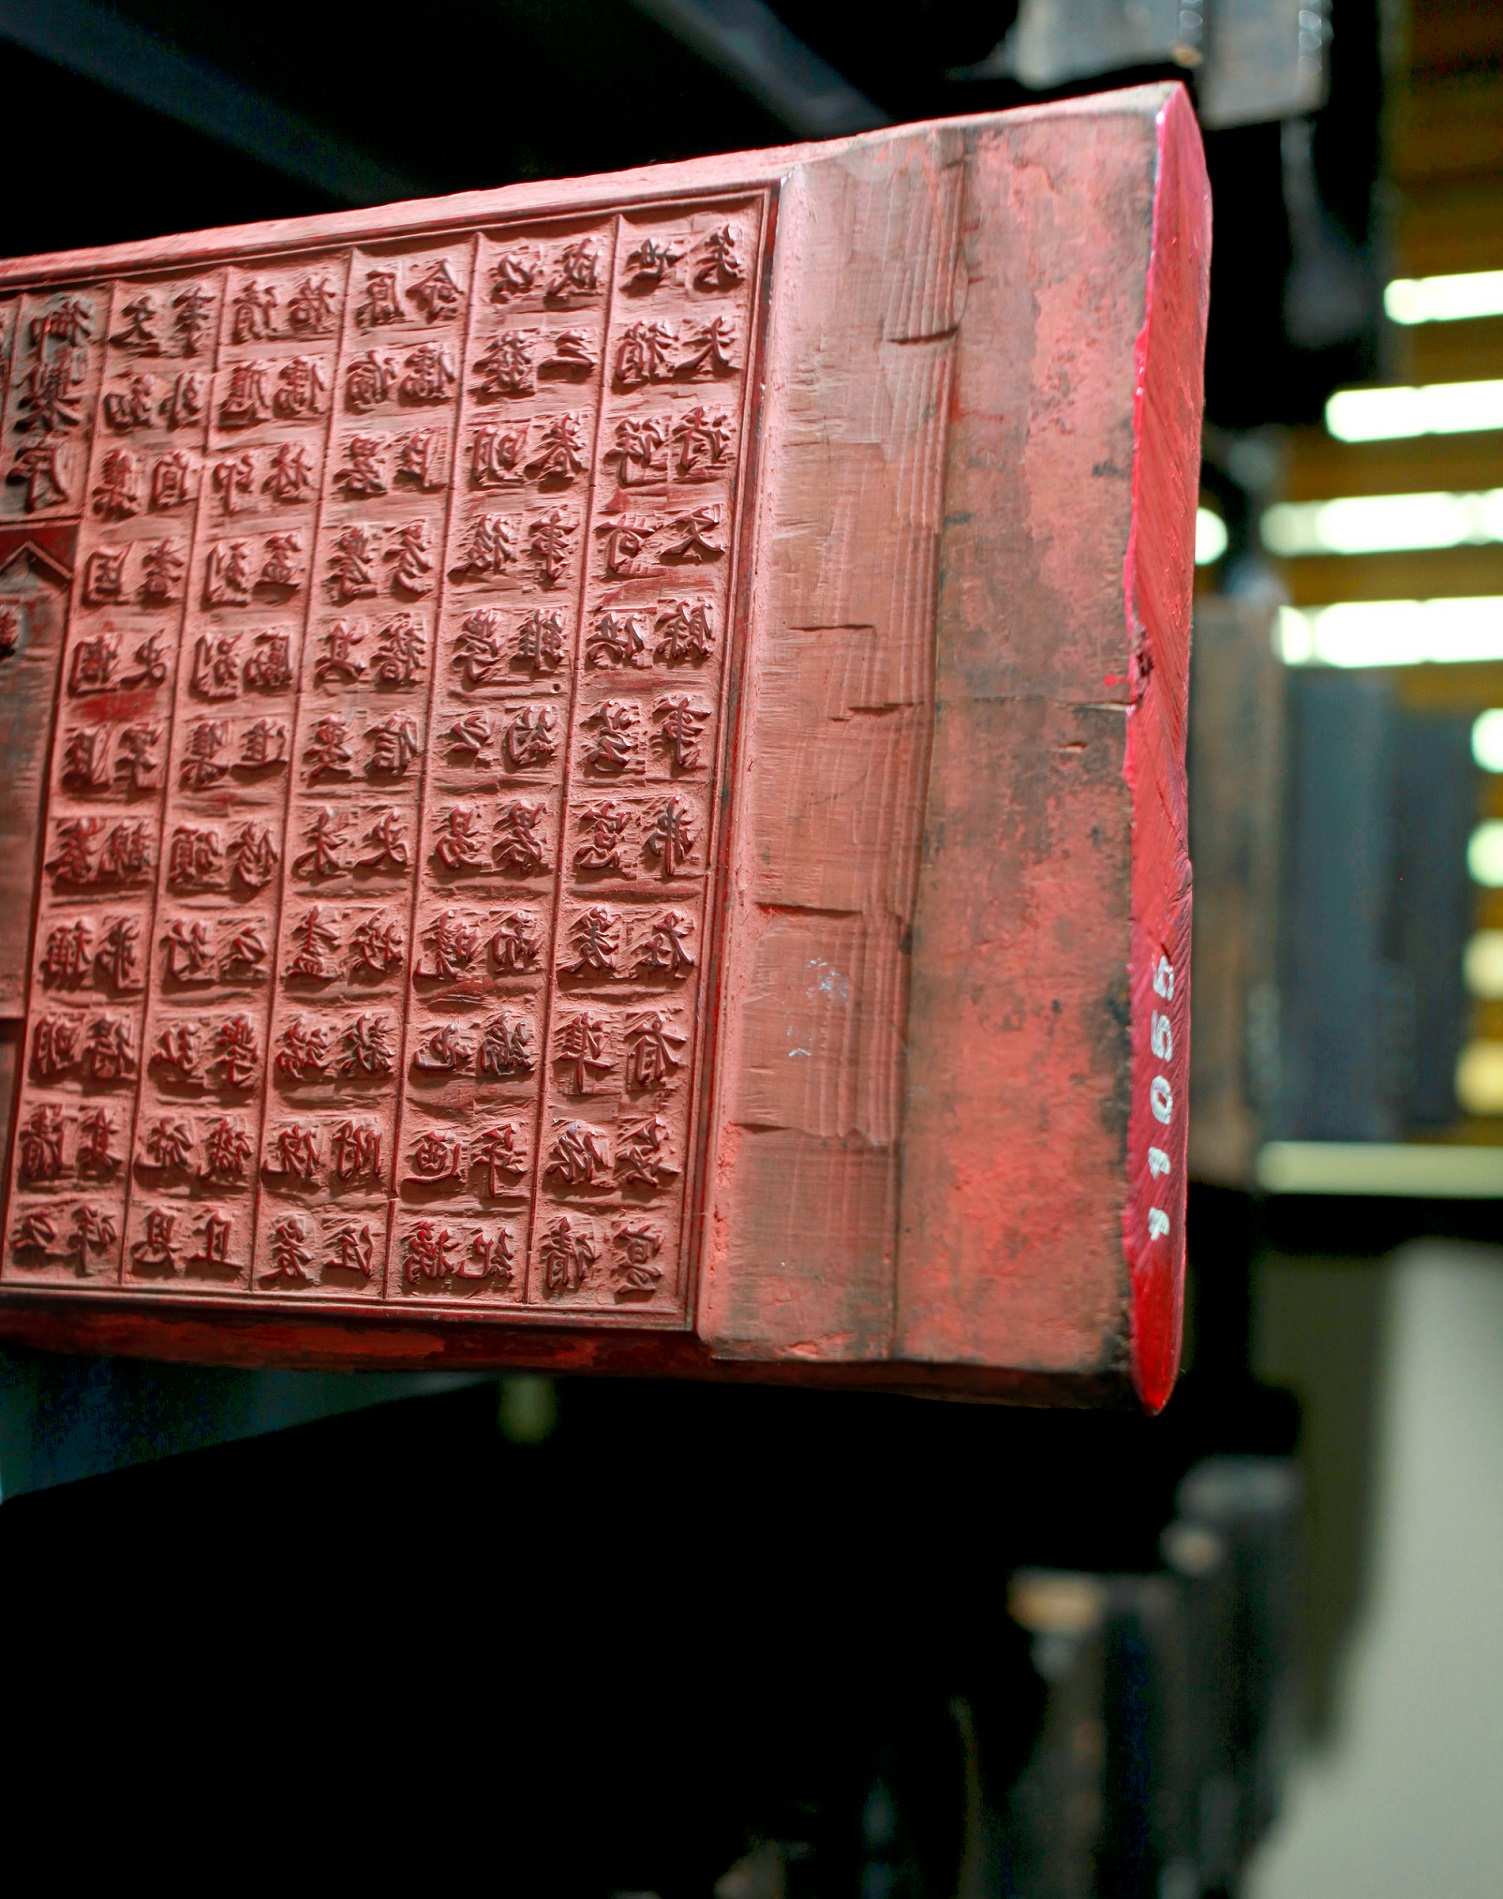 Mộc bản thời Nguyễn là những ghi chép của Lịch sử